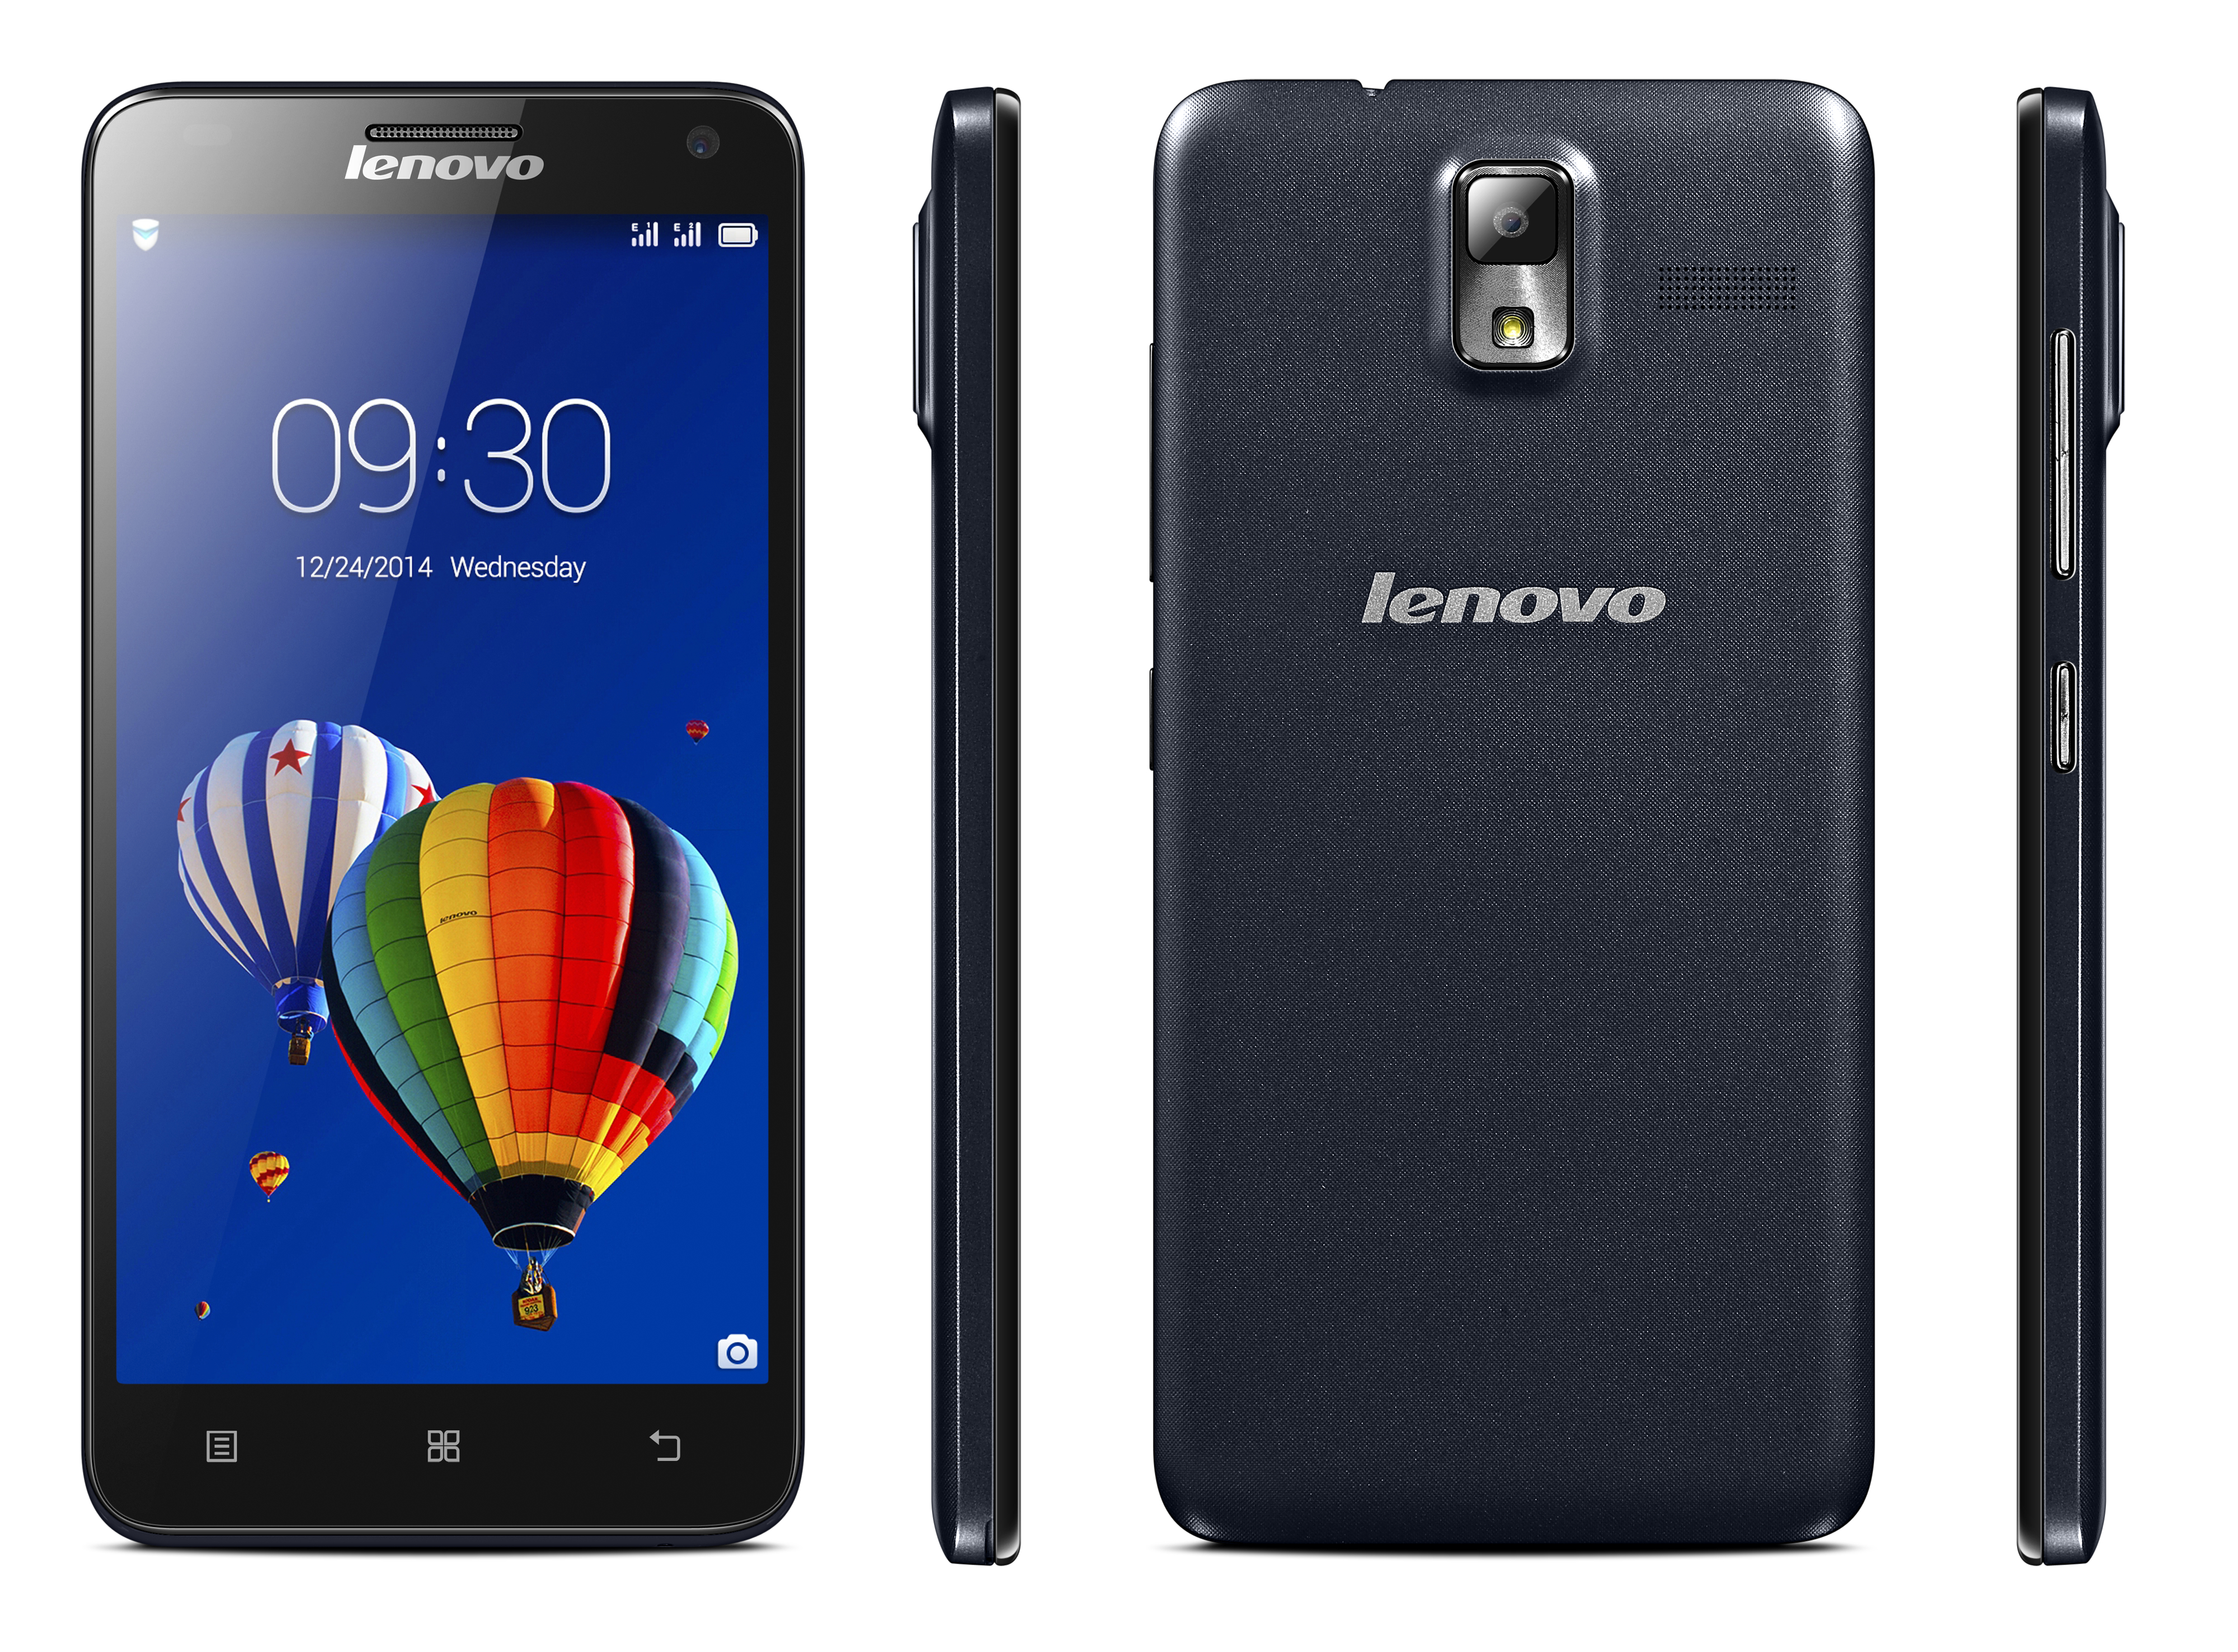 Mobilný telefón Lenovo S580 Black